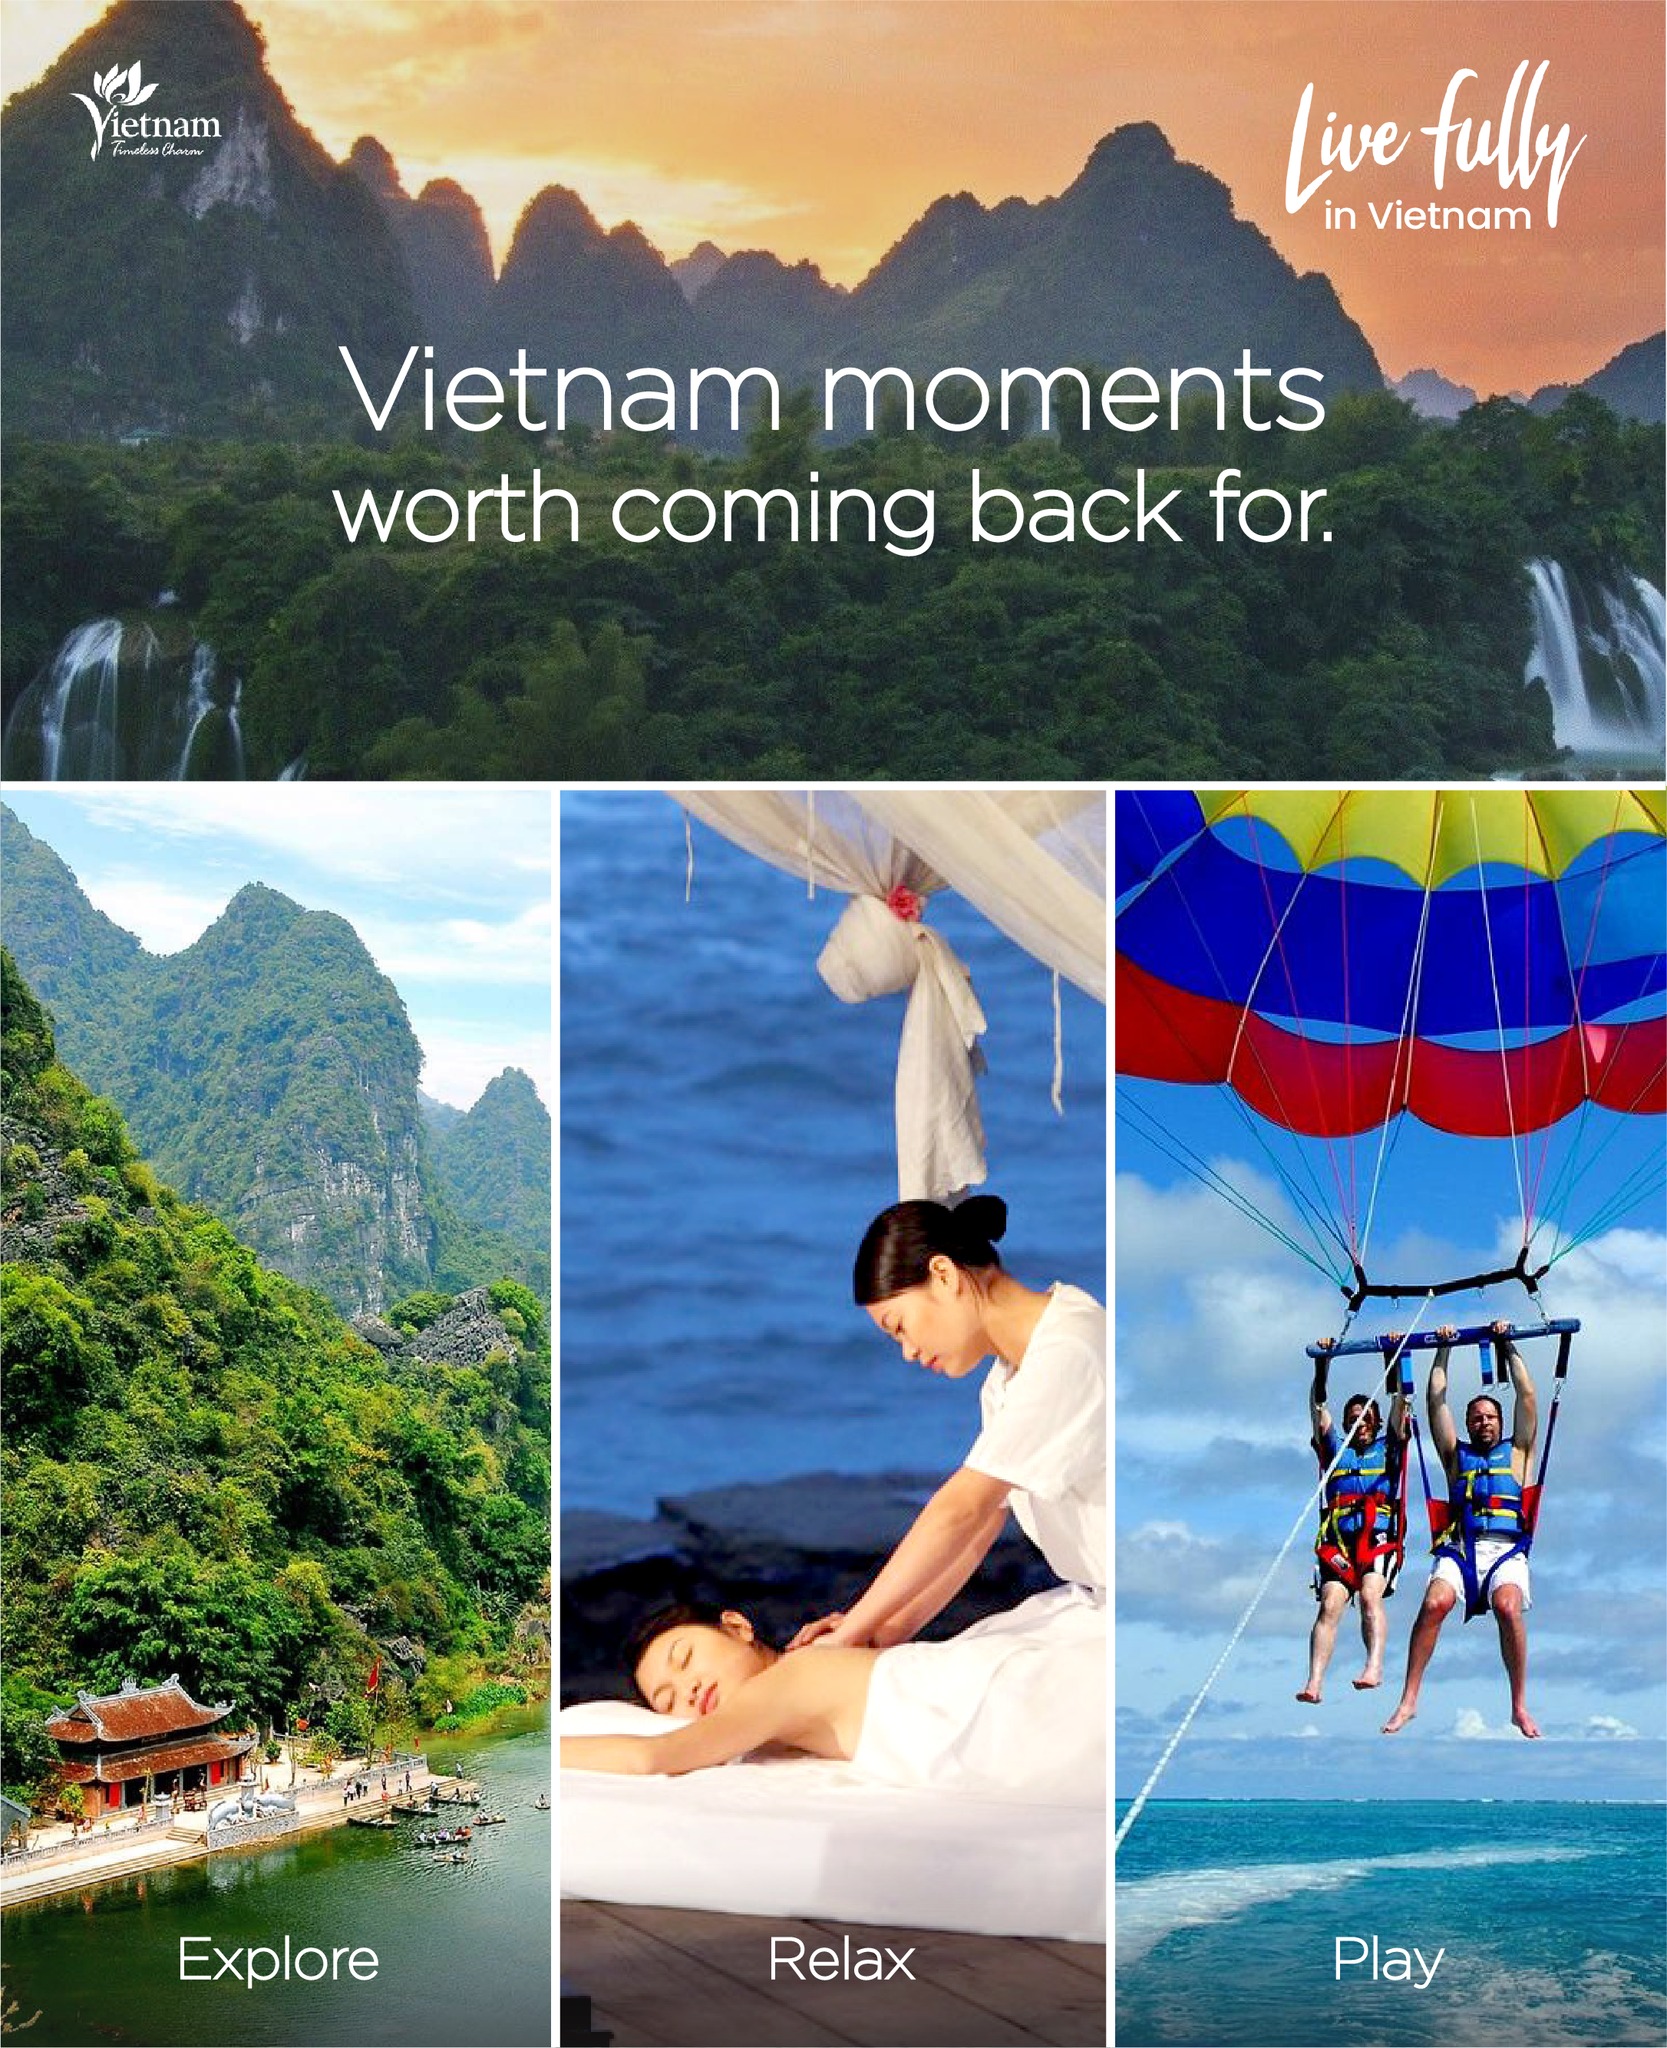 ベトナム 首相に完全な観光再開のタイムラインの迅速な発表を求める